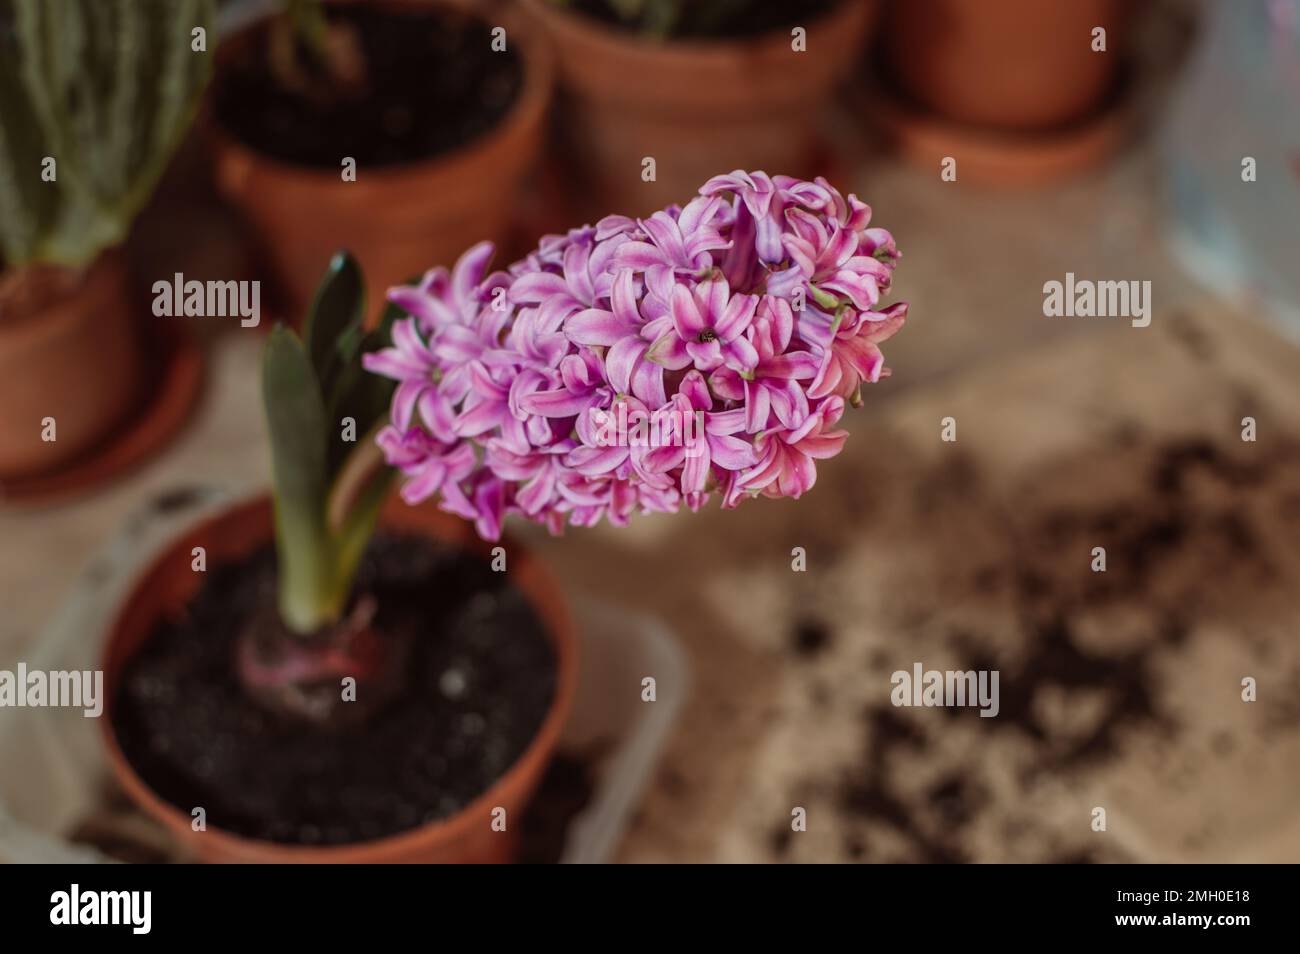 Rose vif violet grande fleur d'une jacinthe fleurie dans un pot d'argile gros plan Banque D'Images